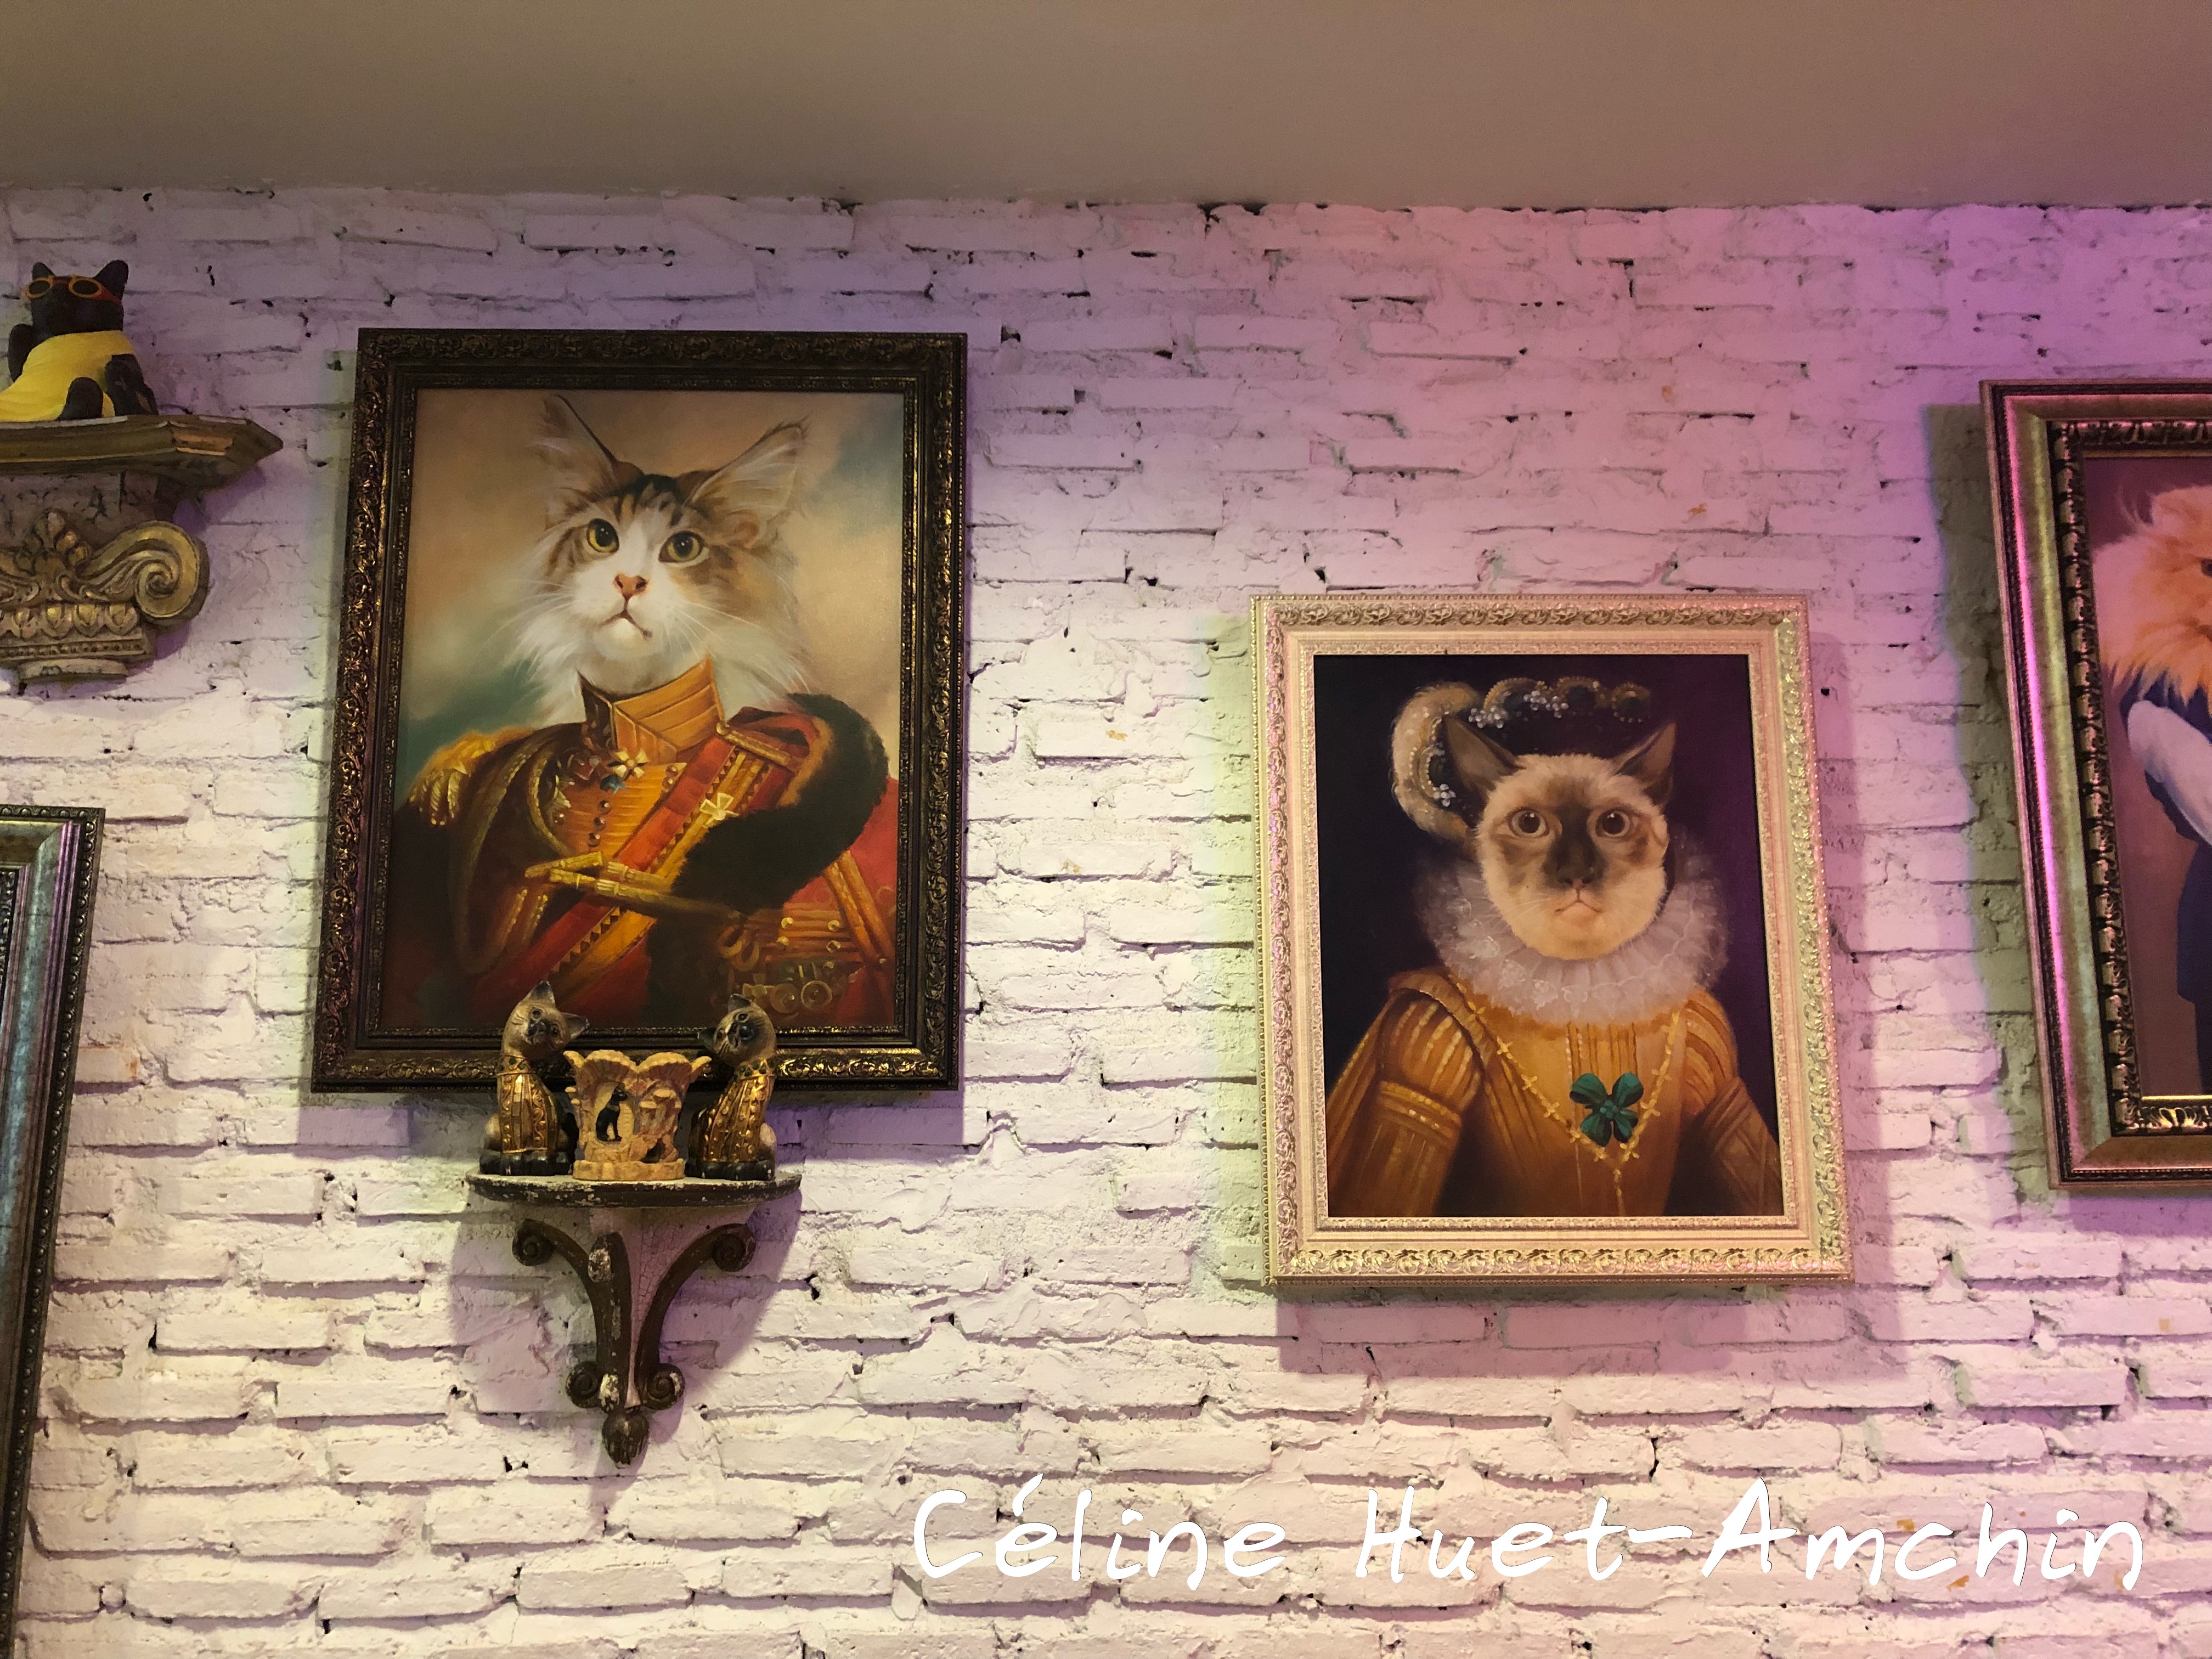 Caturday Cat Café Bangkok Thaïlande Asie